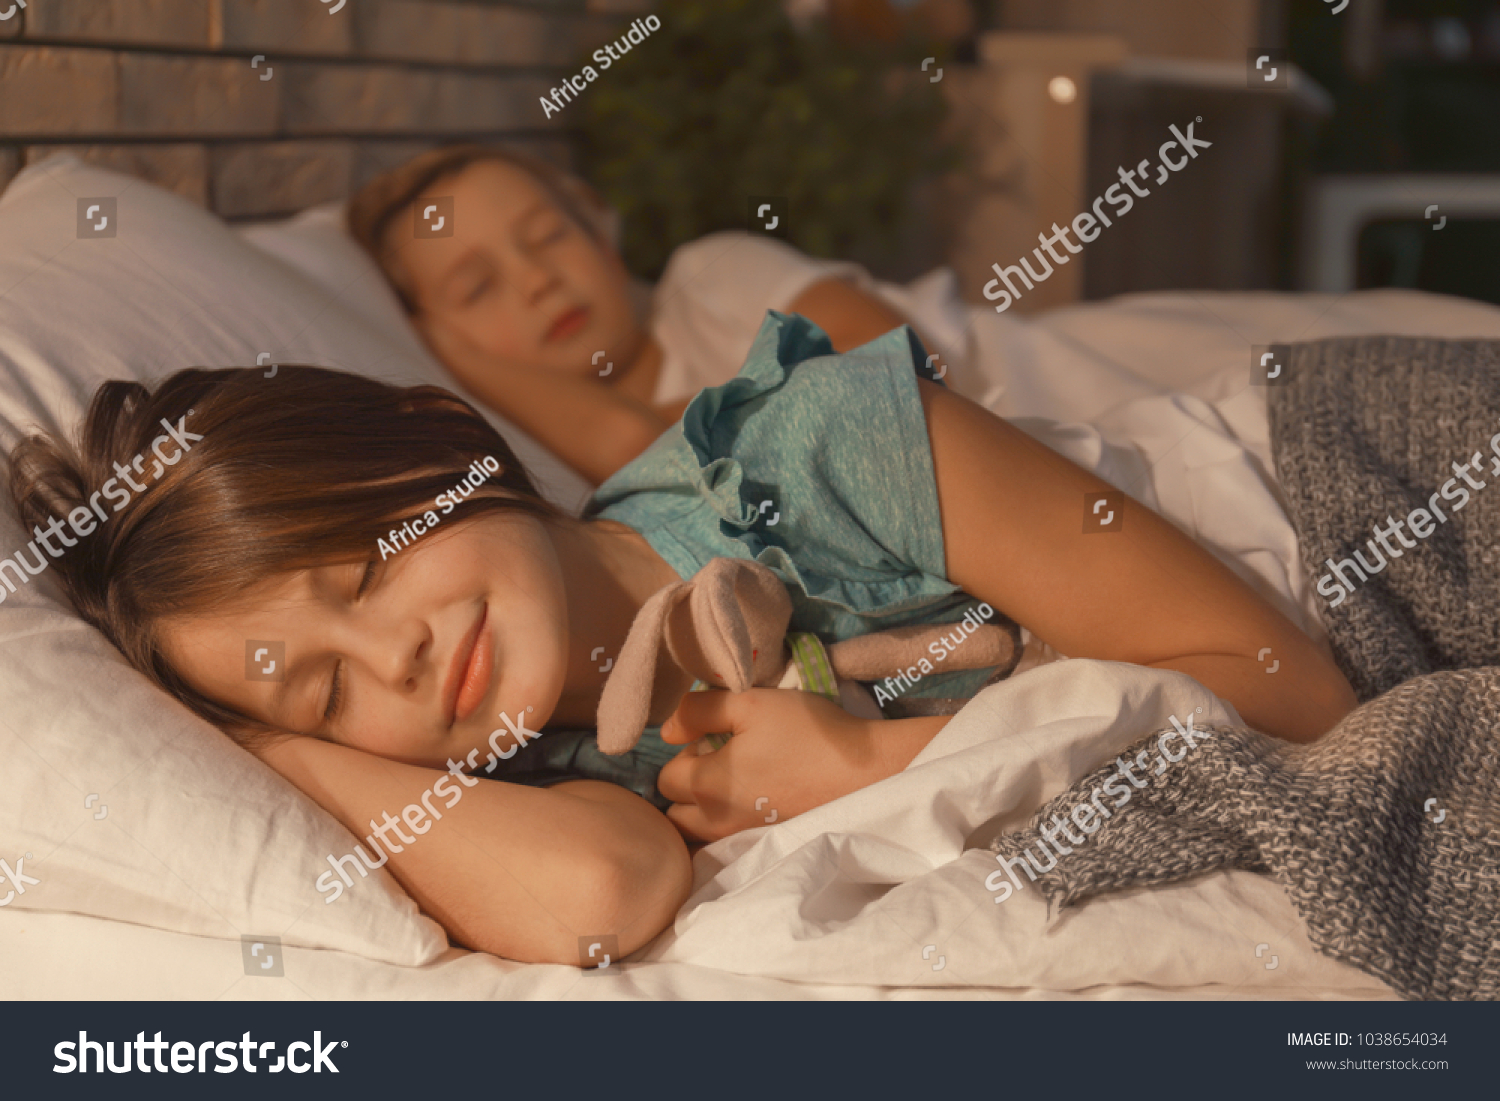 Брат присунул спящей сестре в киску когда опоил ее снотворным